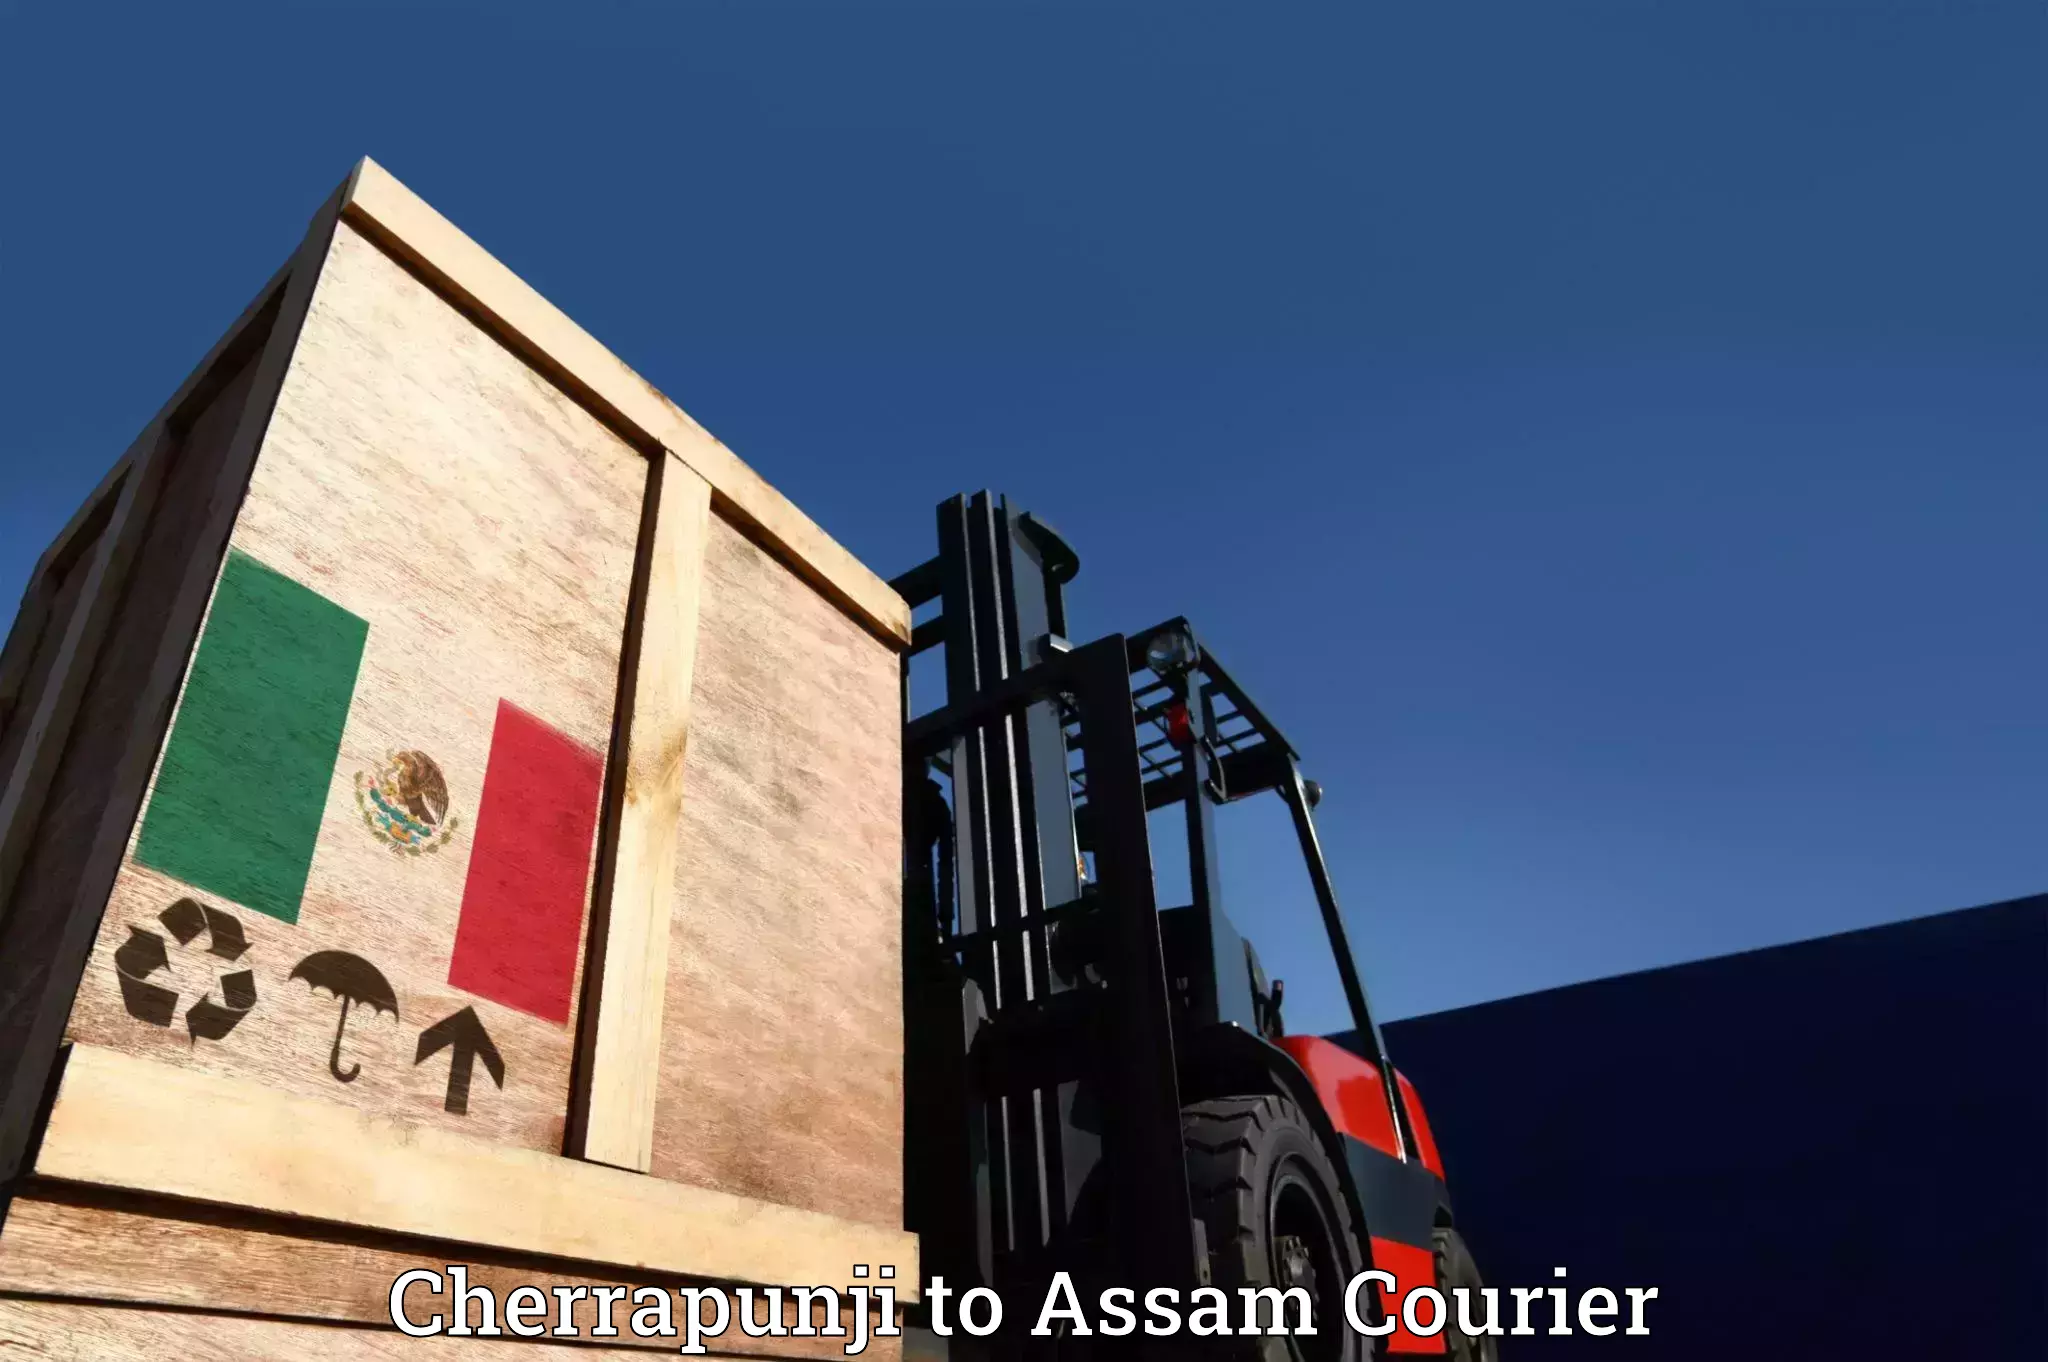 Furniture transport experts Cherrapunji to Assam